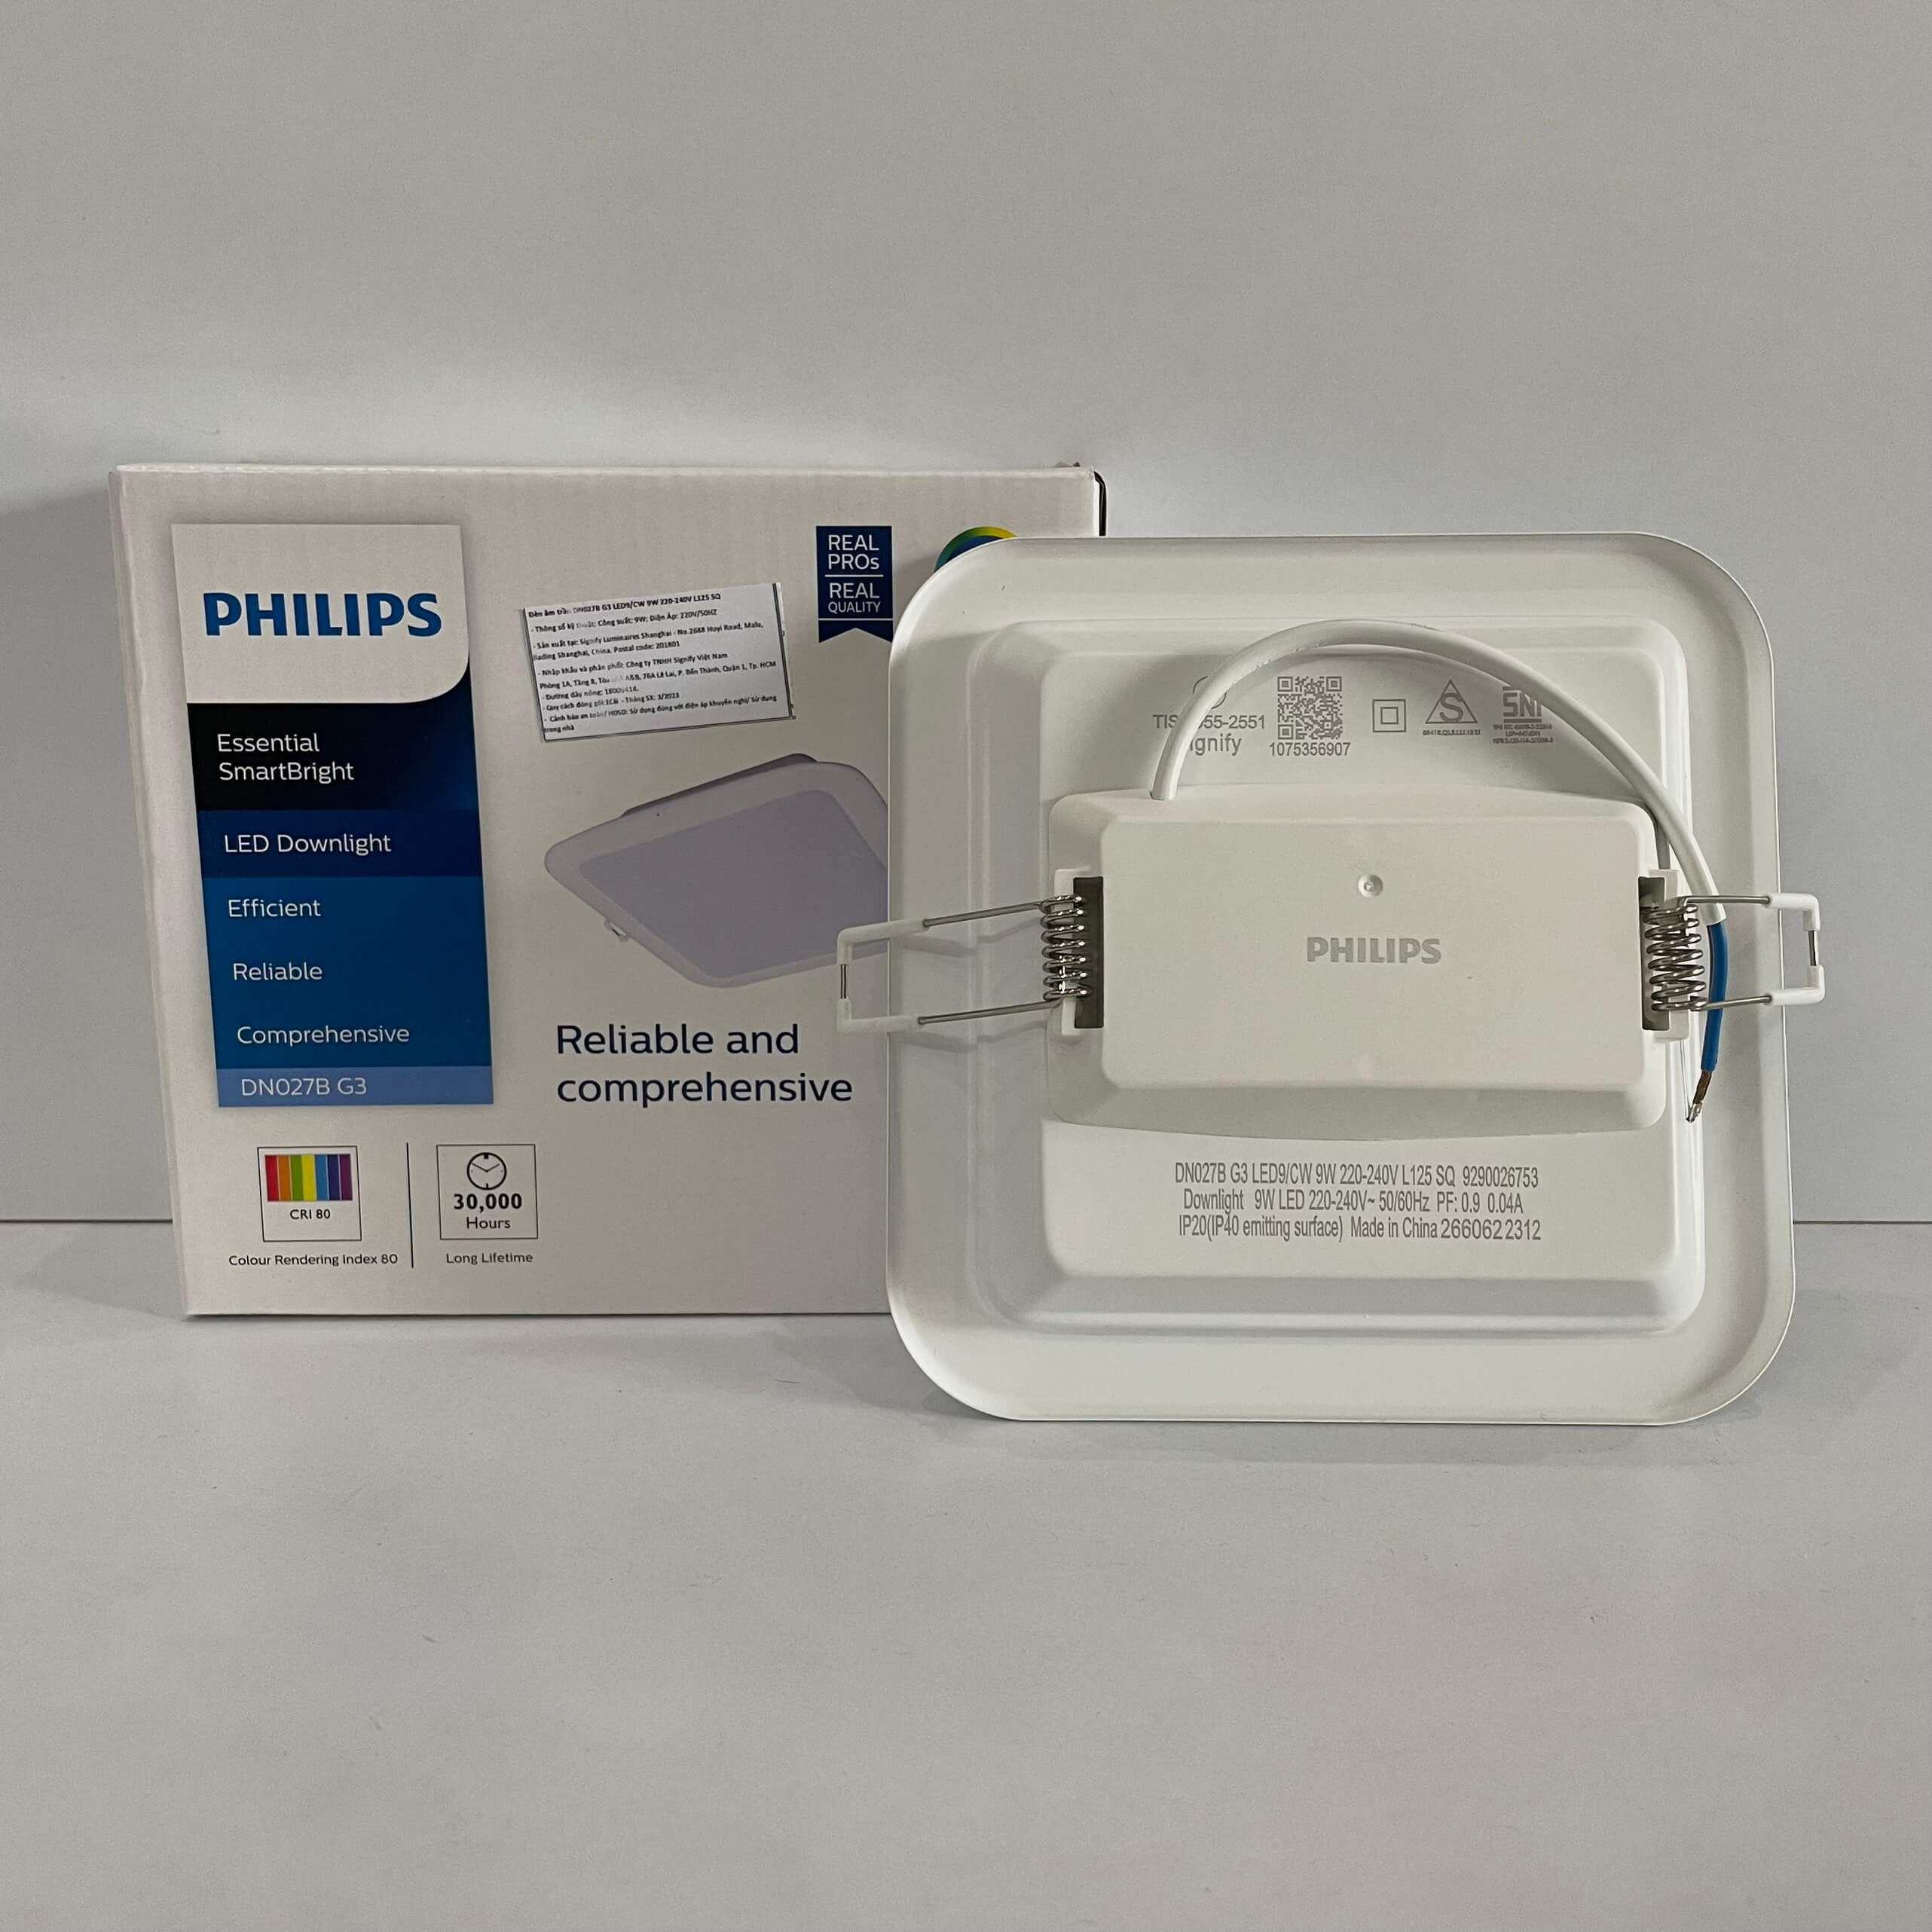 Đèn LED Philips Downlight âm trần vuông DN027B G3 LED9 9W/CW 220-240V L125 SQ 6500K